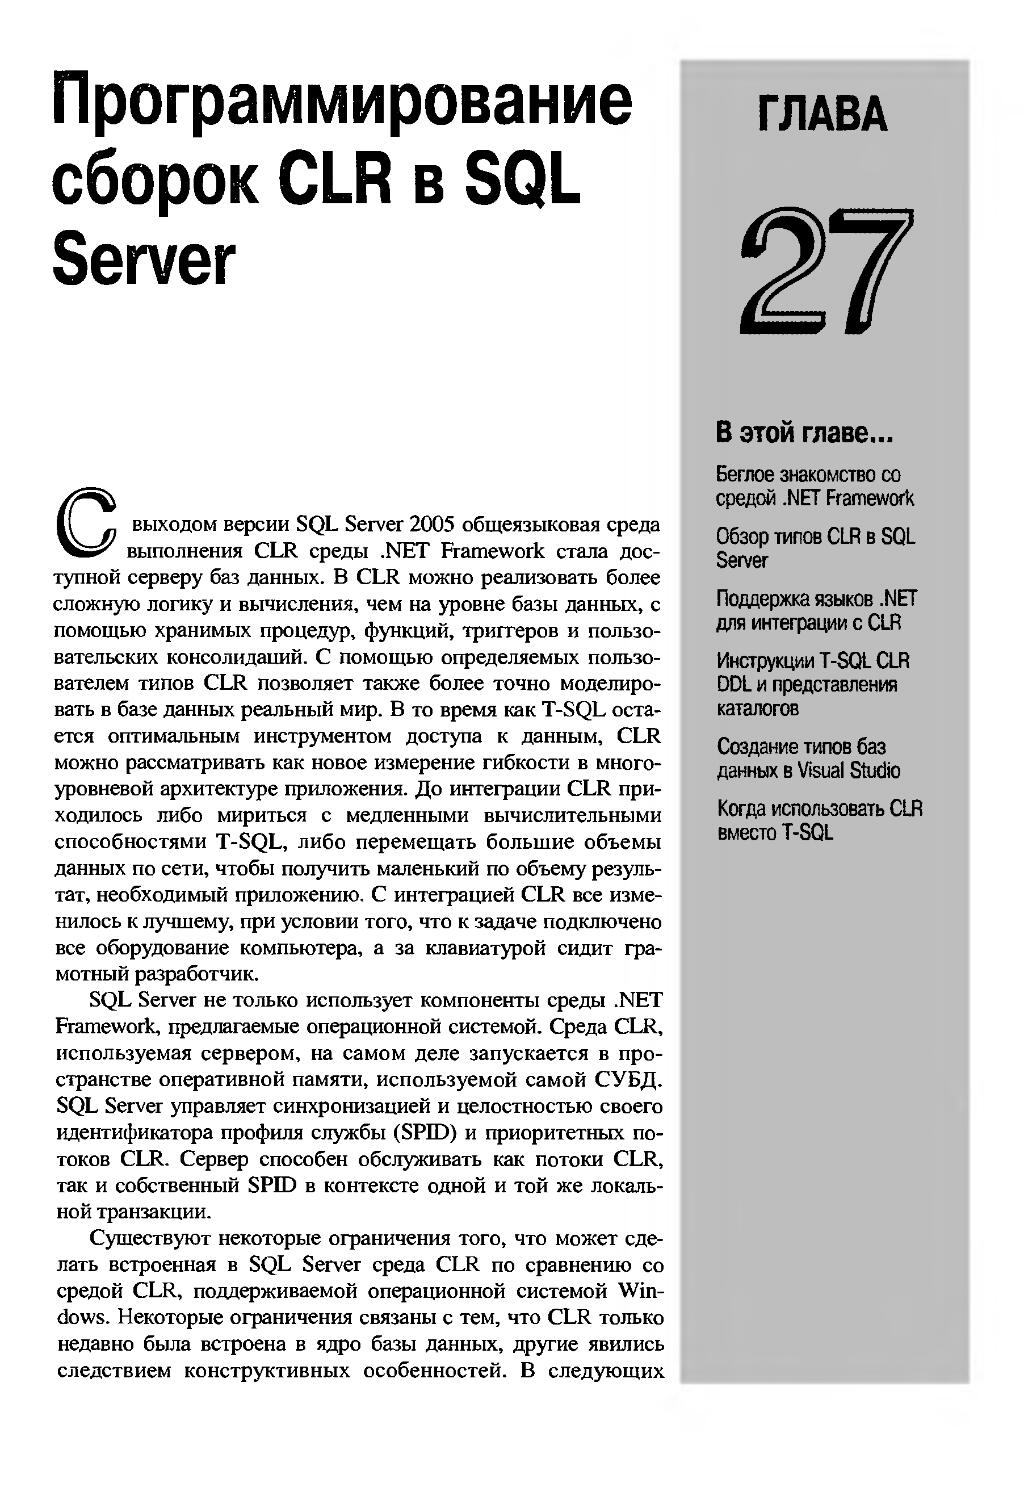 ГЛАВА 27. Программирование сборок CLR в SQL Server